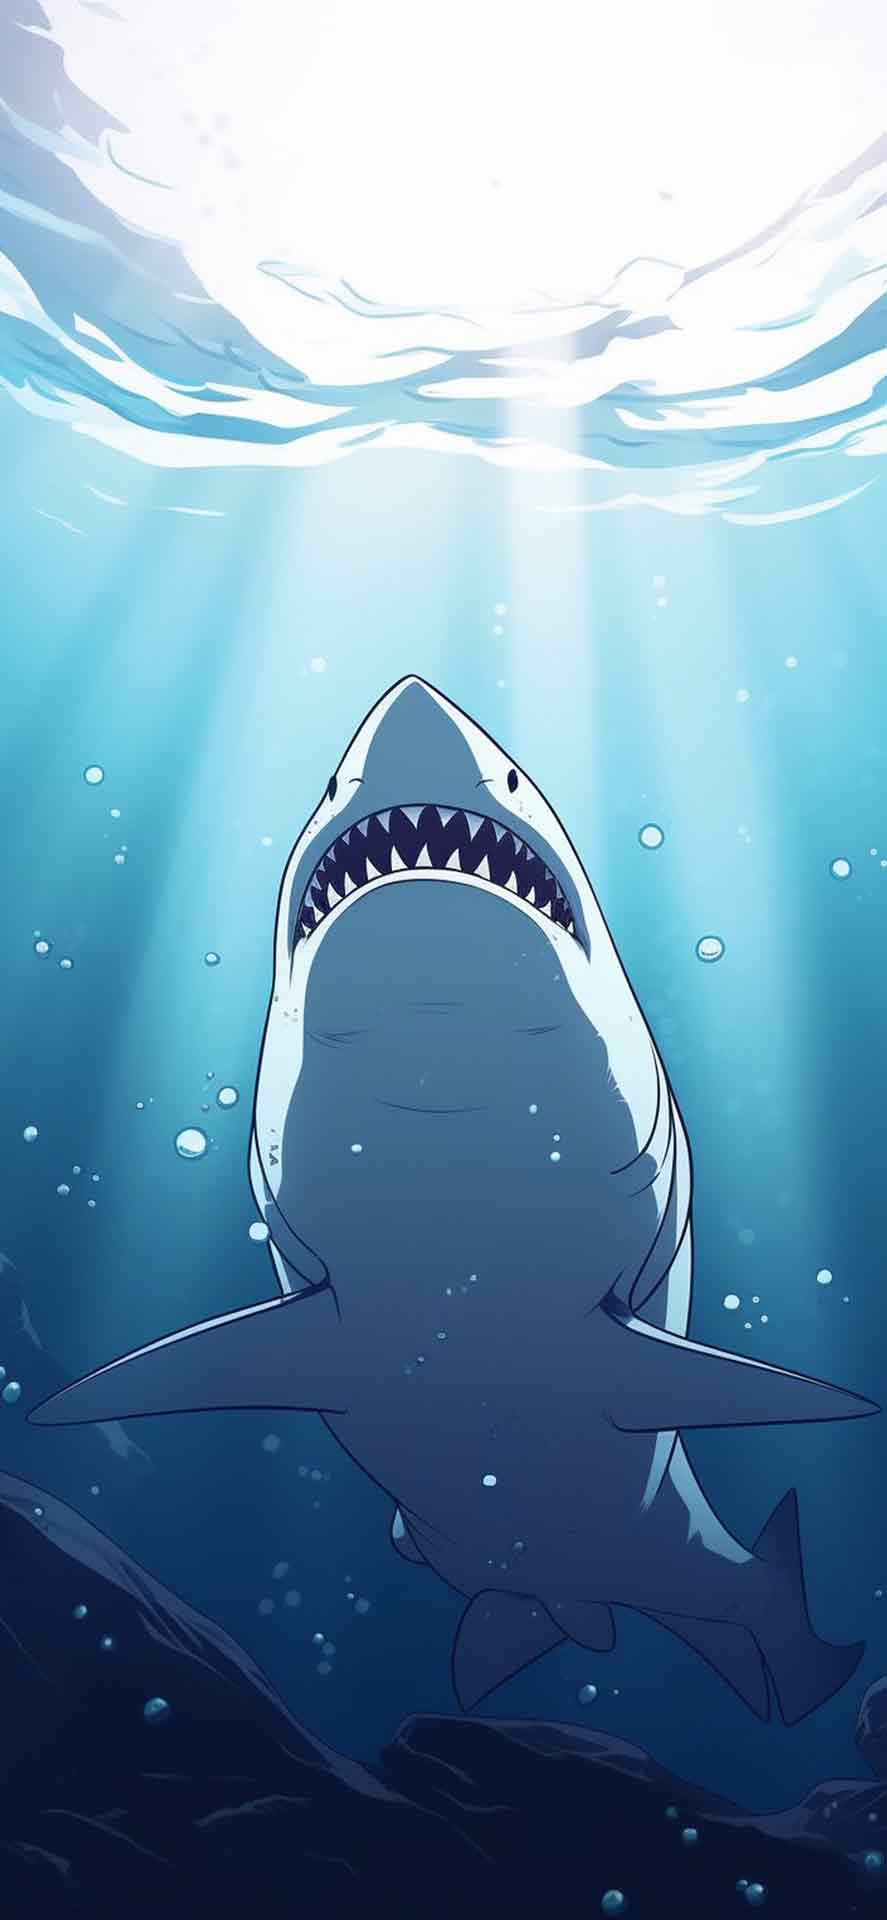 水蓝色壁纸中的白鲨